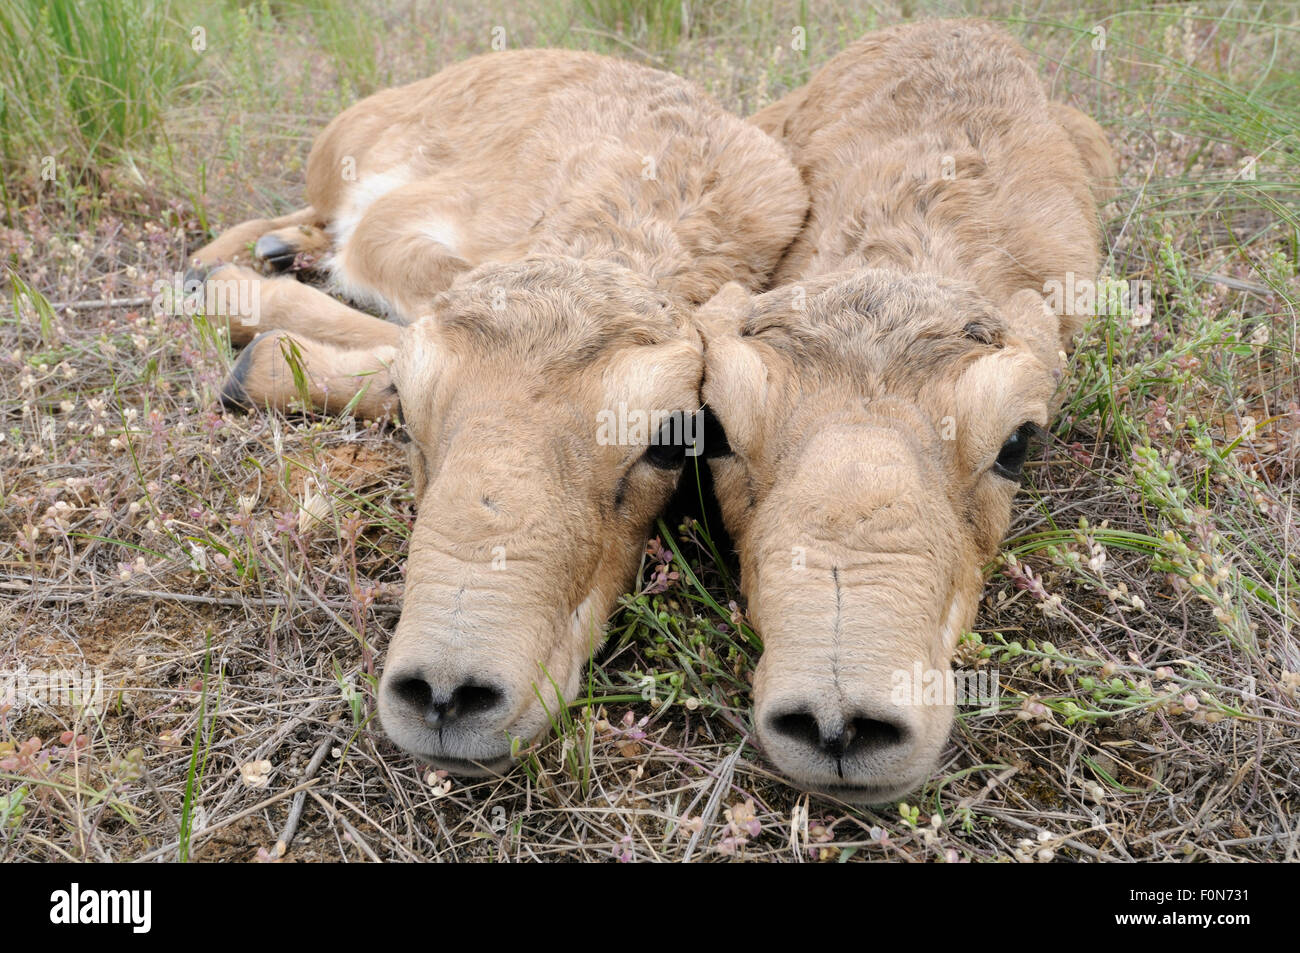 Deux nouveau-né les antilopes Saïga (Saiga tatarica) veaux étendue sur le sol, Cherniye zemli (terre noire), Réserve naturelle de Kalmoukie, en Russie, en mai 2009 Banque D'Images